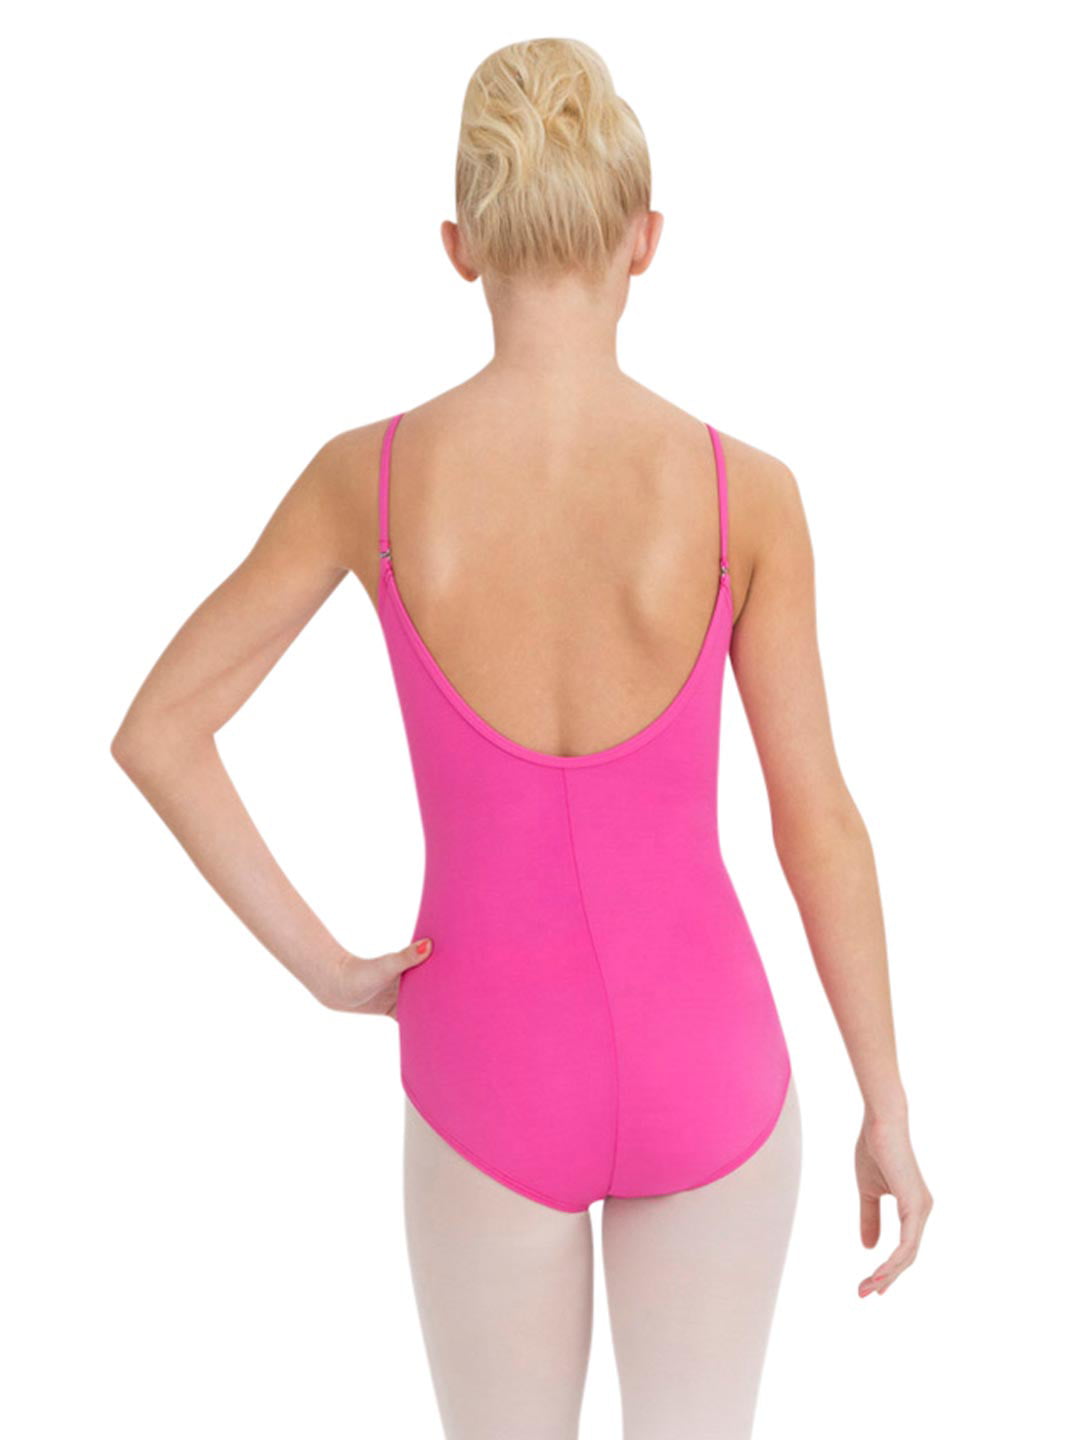 Capezio Hot Pink Women's Team Basics Camisole Bra Top, Medium : Target